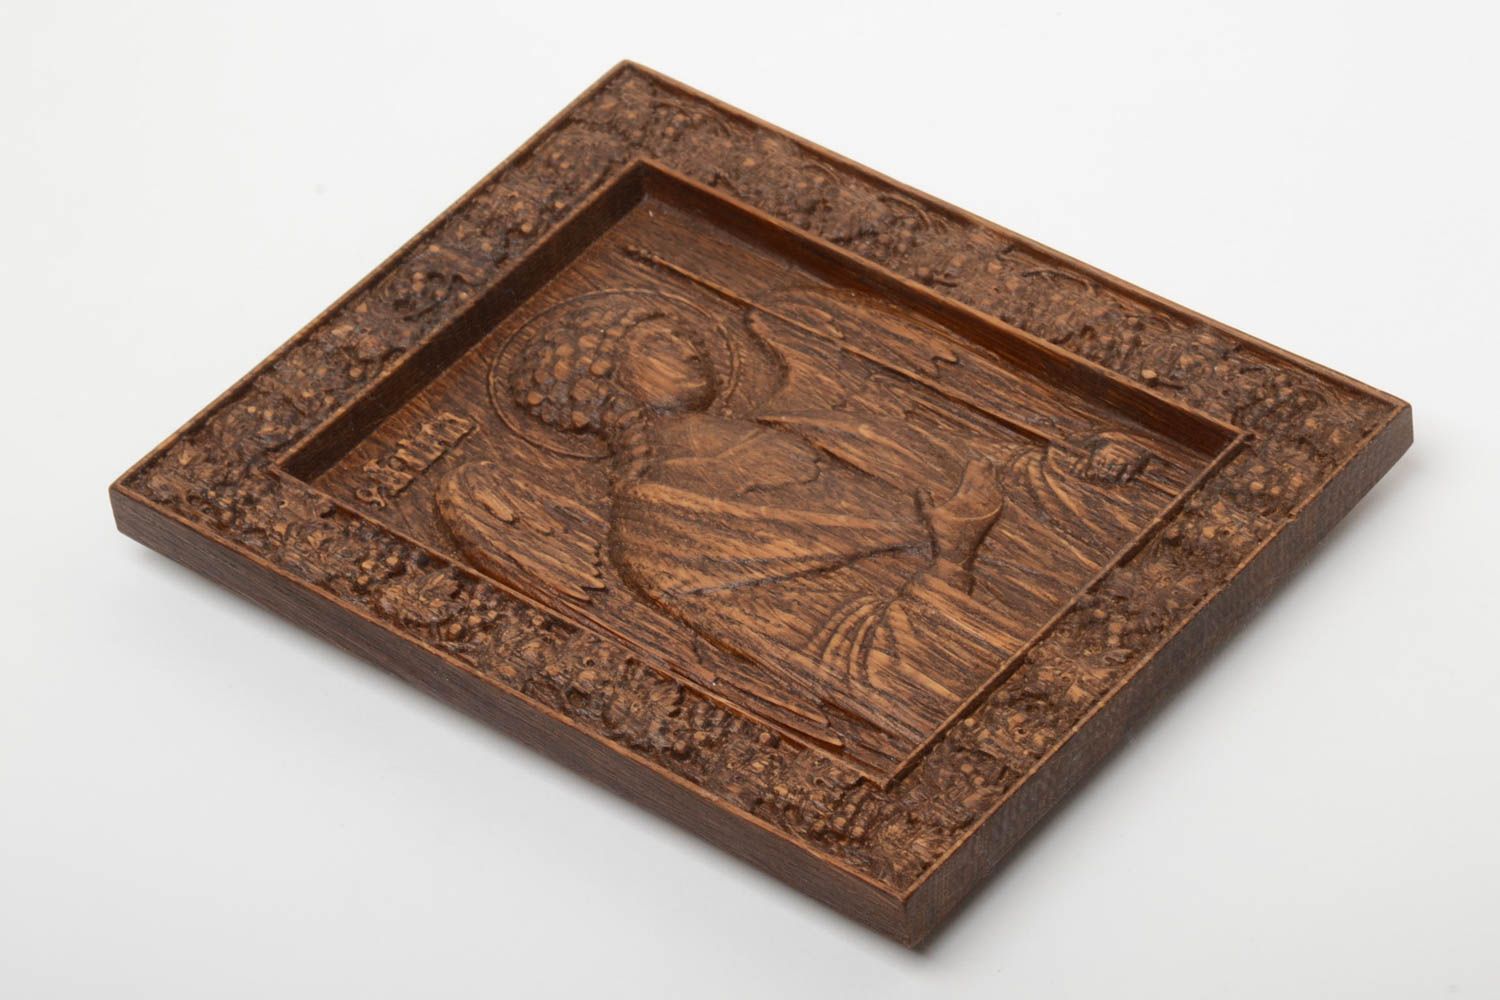 Icône sculptée en bois avec Archange saint Michel faite main orthodoxe photo 2